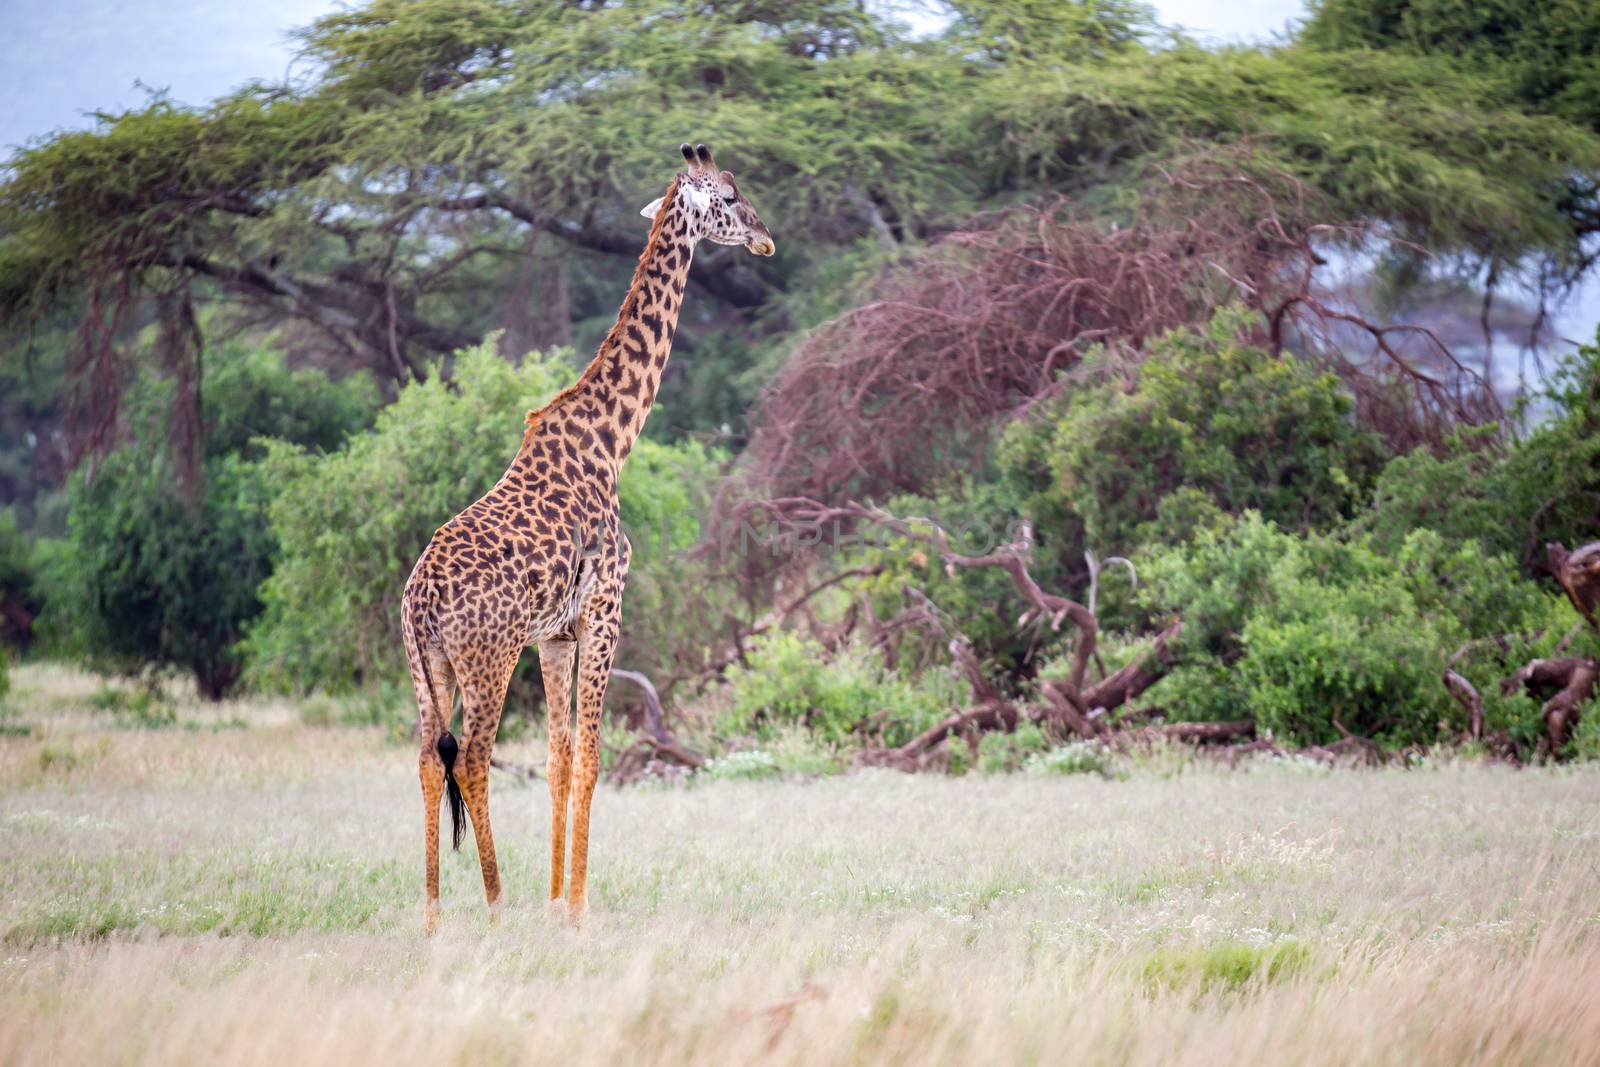 Giraffe is walking in the savannah between the plants by 25ehaag6